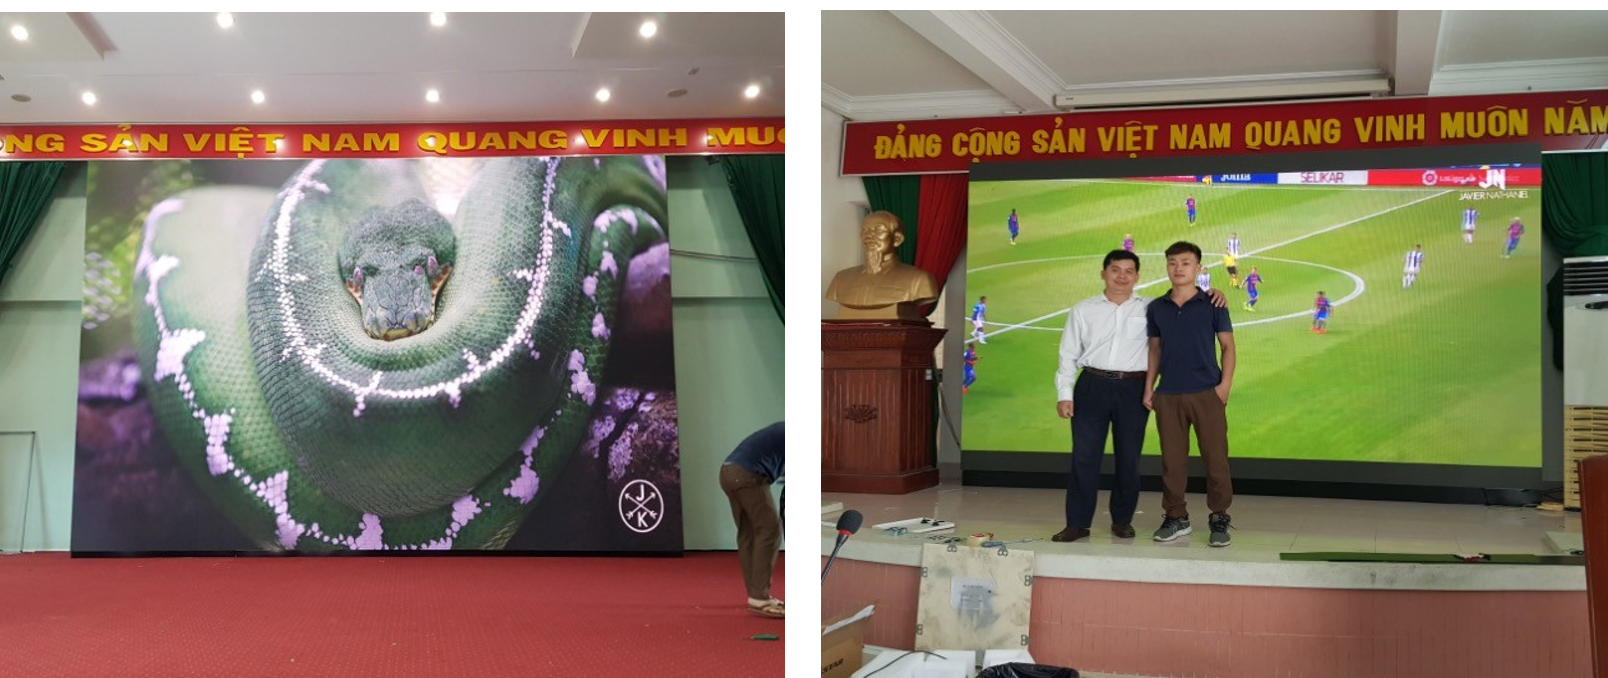 Thi công lắp đặt màn hình LED tại Kho bạc nhà nước tỉnh Đắk Lắk và tỉnh Tiền Giang